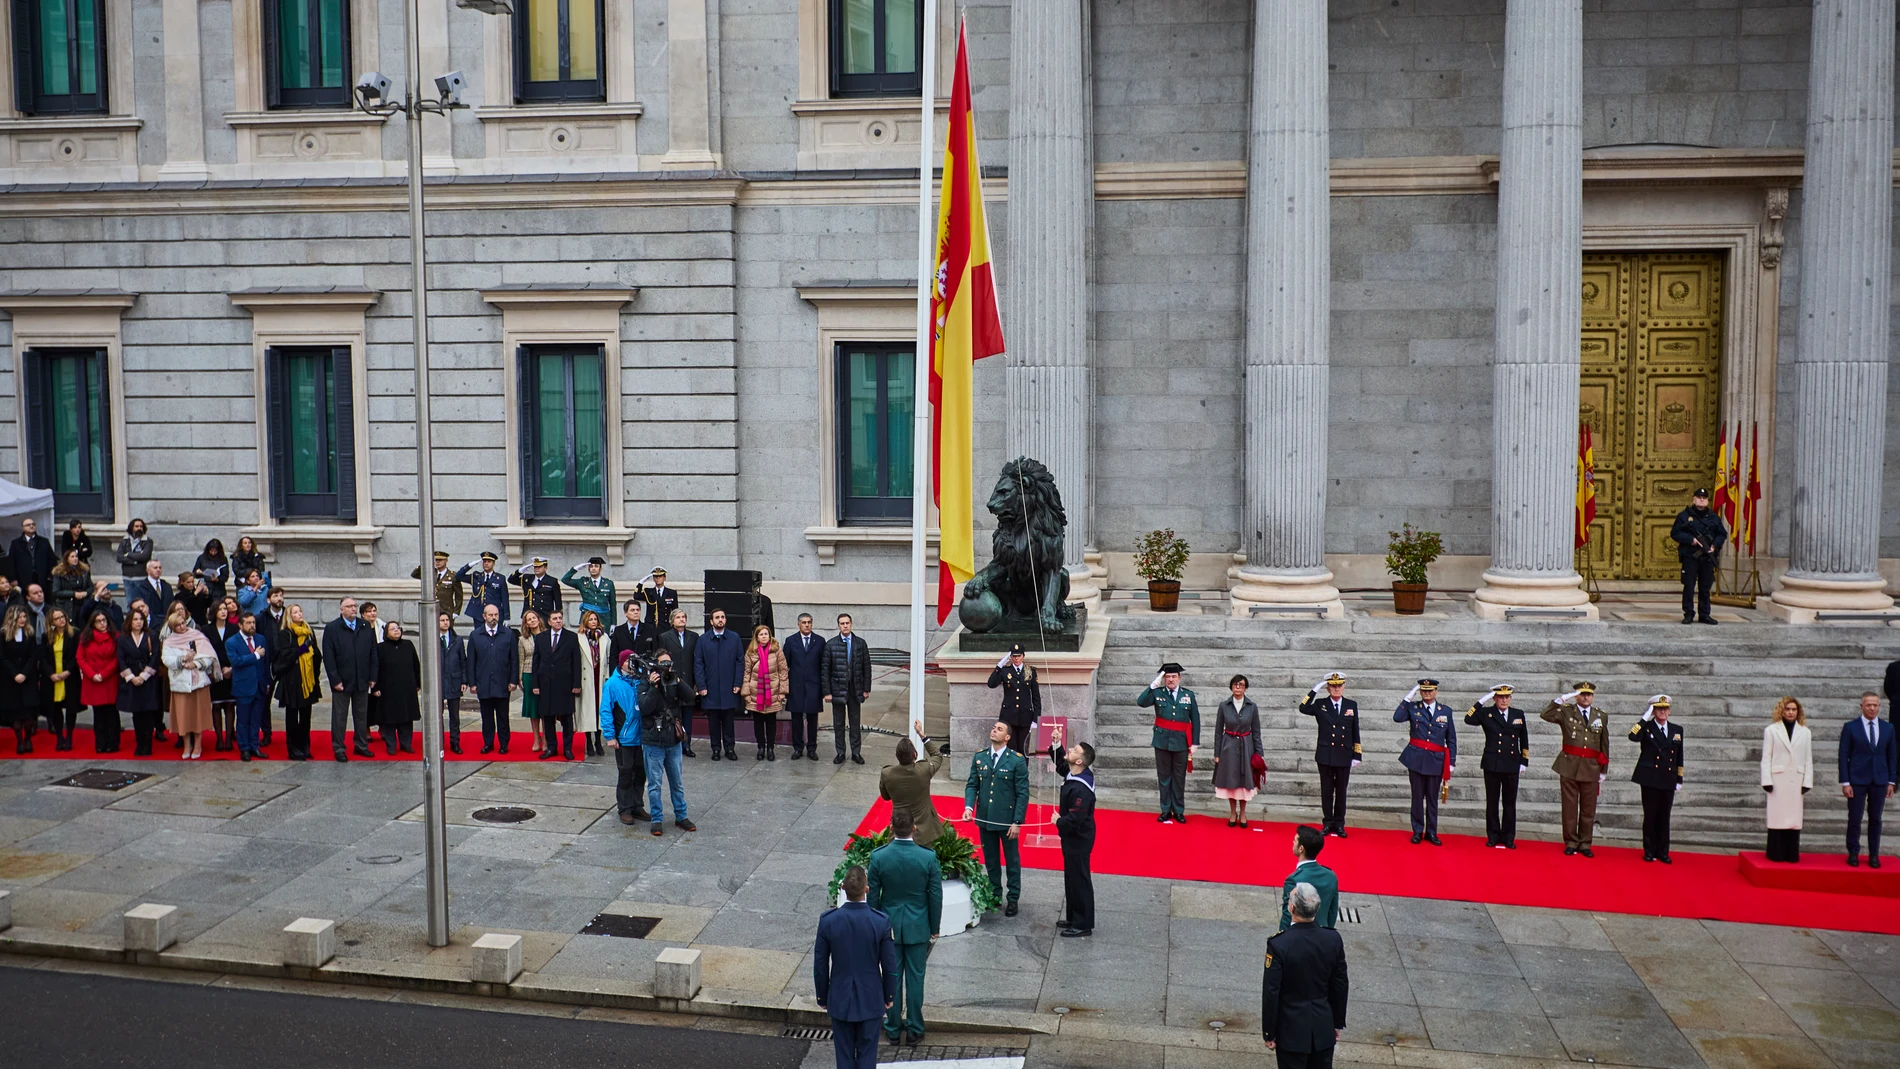 Acto Institucional del izado de bandera junto con autoridades militares y políticas a las puertas del Congreso de los Diputados durante la Conmemoración del aniversario de la Constitución este martes en Madrid.